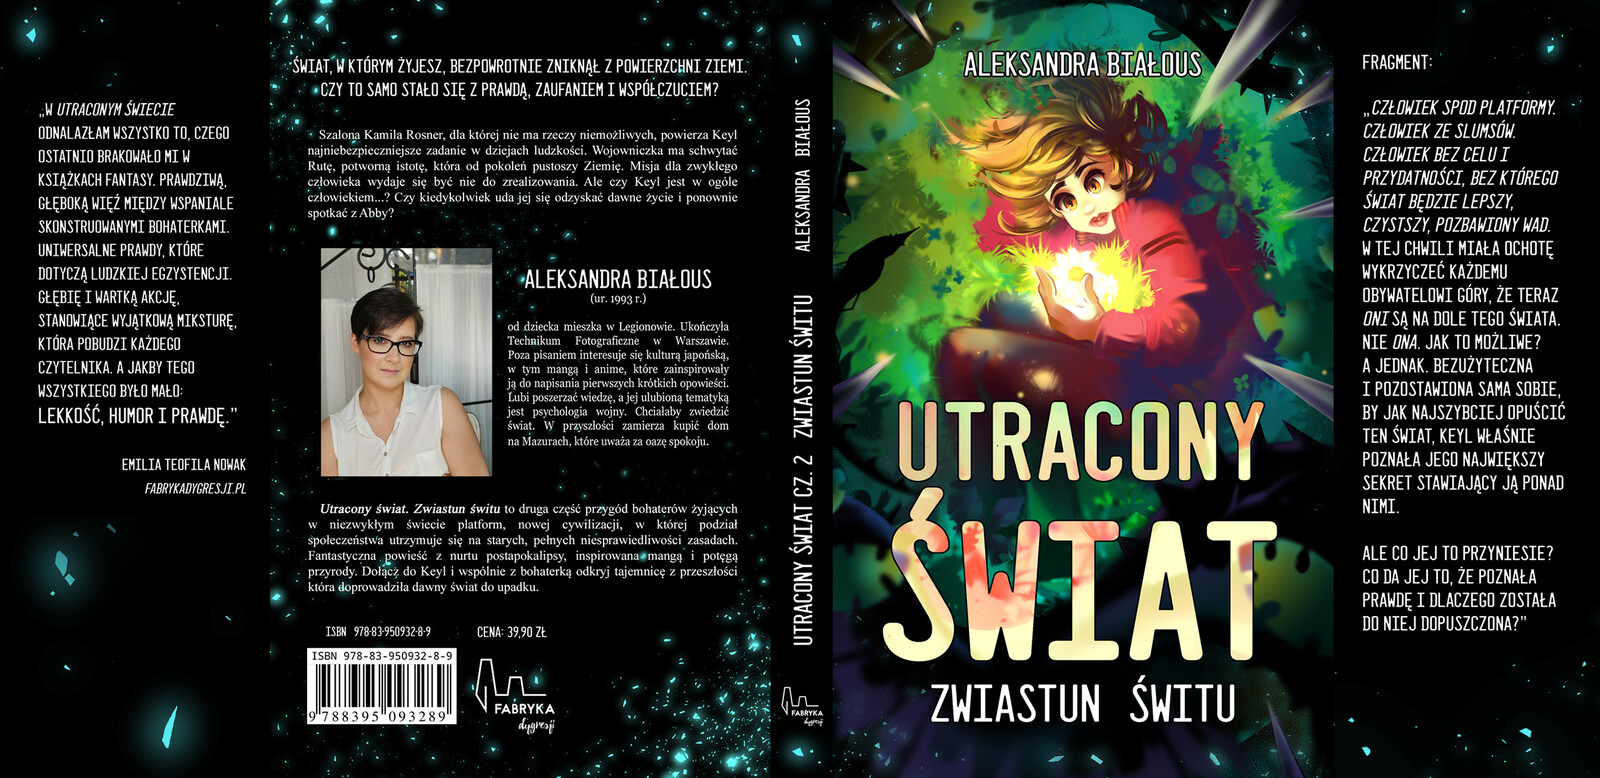 Full cover design for the second volume of the novel.